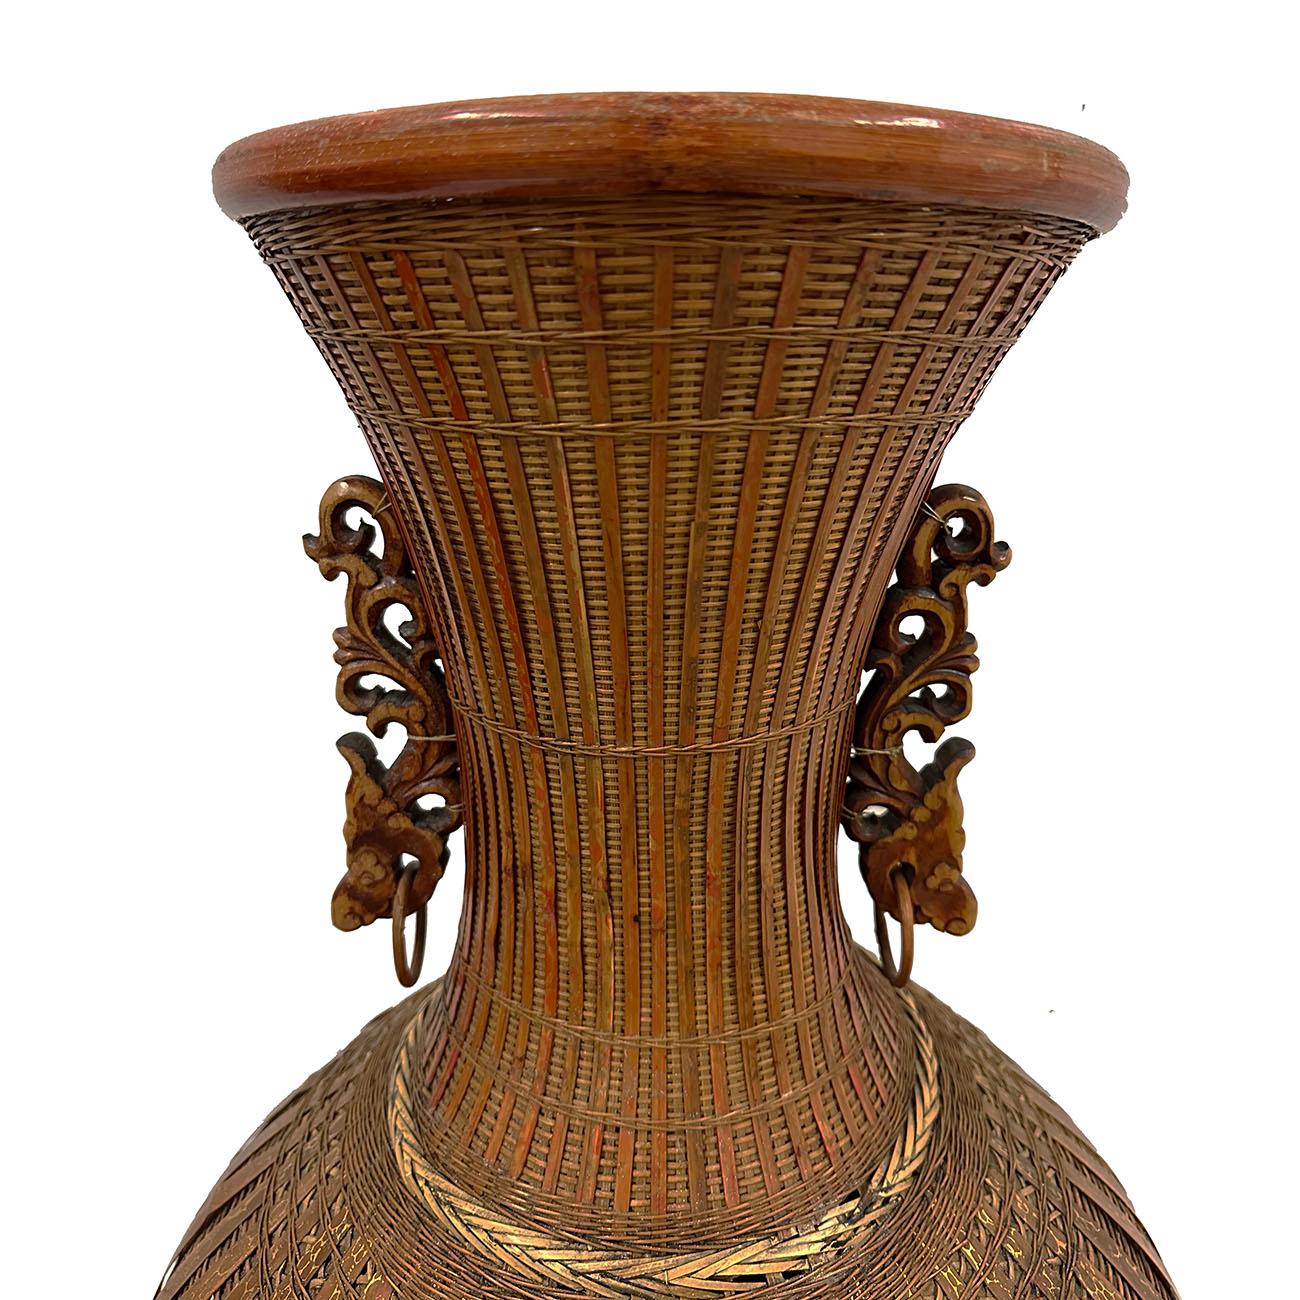 Diese seltene und prächtige chinesische Bambusvase im Vintage-Stil wurde zu 100 % von Hand aus Bambusstreifen geflochten. Es hat sehr exquisite Bambus weben ehrlich mit detaillierten Drachenschnitzerei auf der Seite Ohren. Sie ist wirklich ein